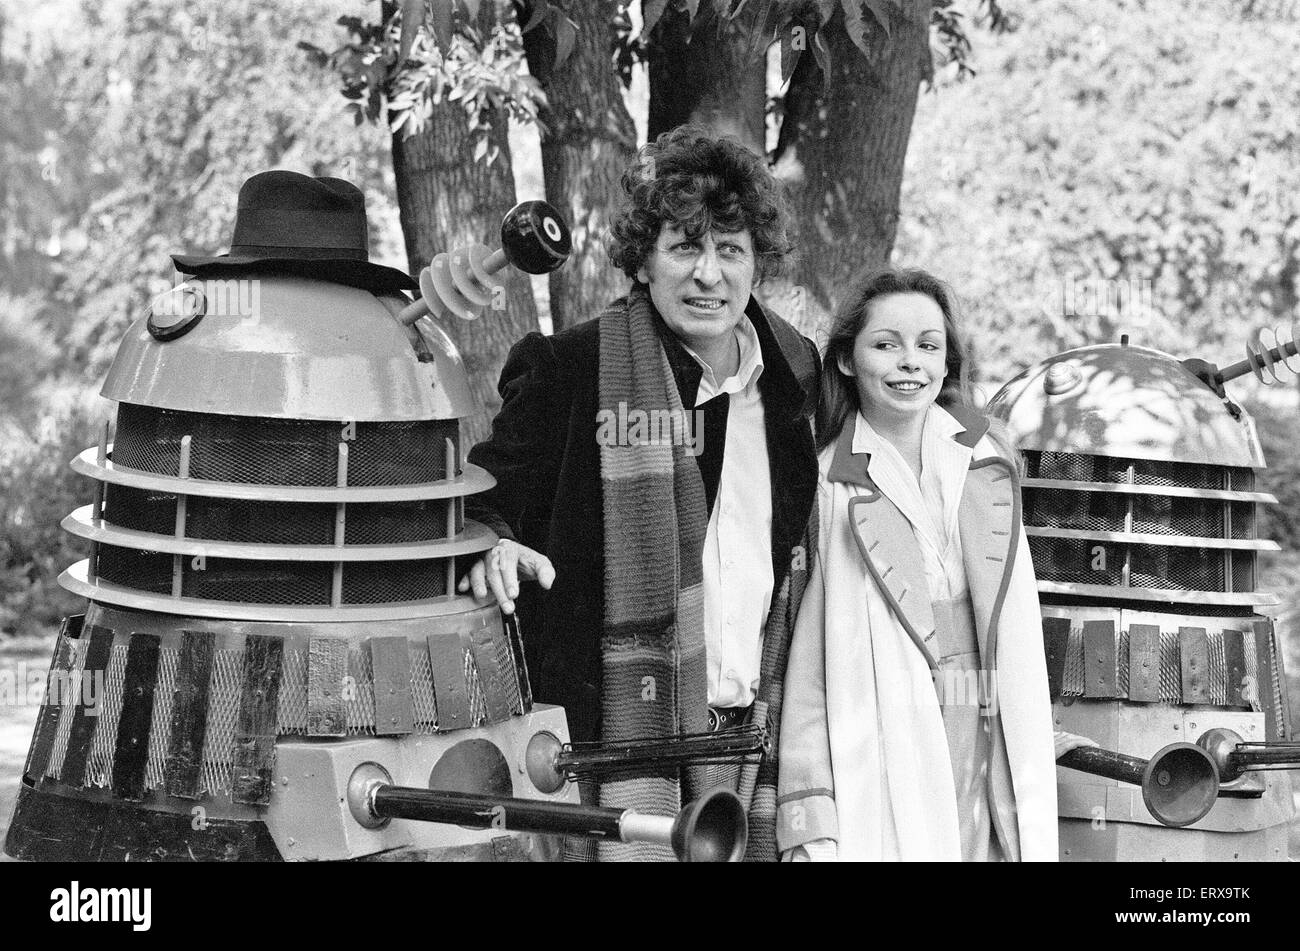 Fototermin - Doctor Who, Schauspieler Tom Baker - 4. Arzt - im Bild mit anderen Time Lord Romana gespielt von der Schauspielerin Sarah Ward aka Lalla Ward 30. August 1979.  Lalla Ward ist der 2. Schauspielerin für die Rolle der Romana. Stockfoto